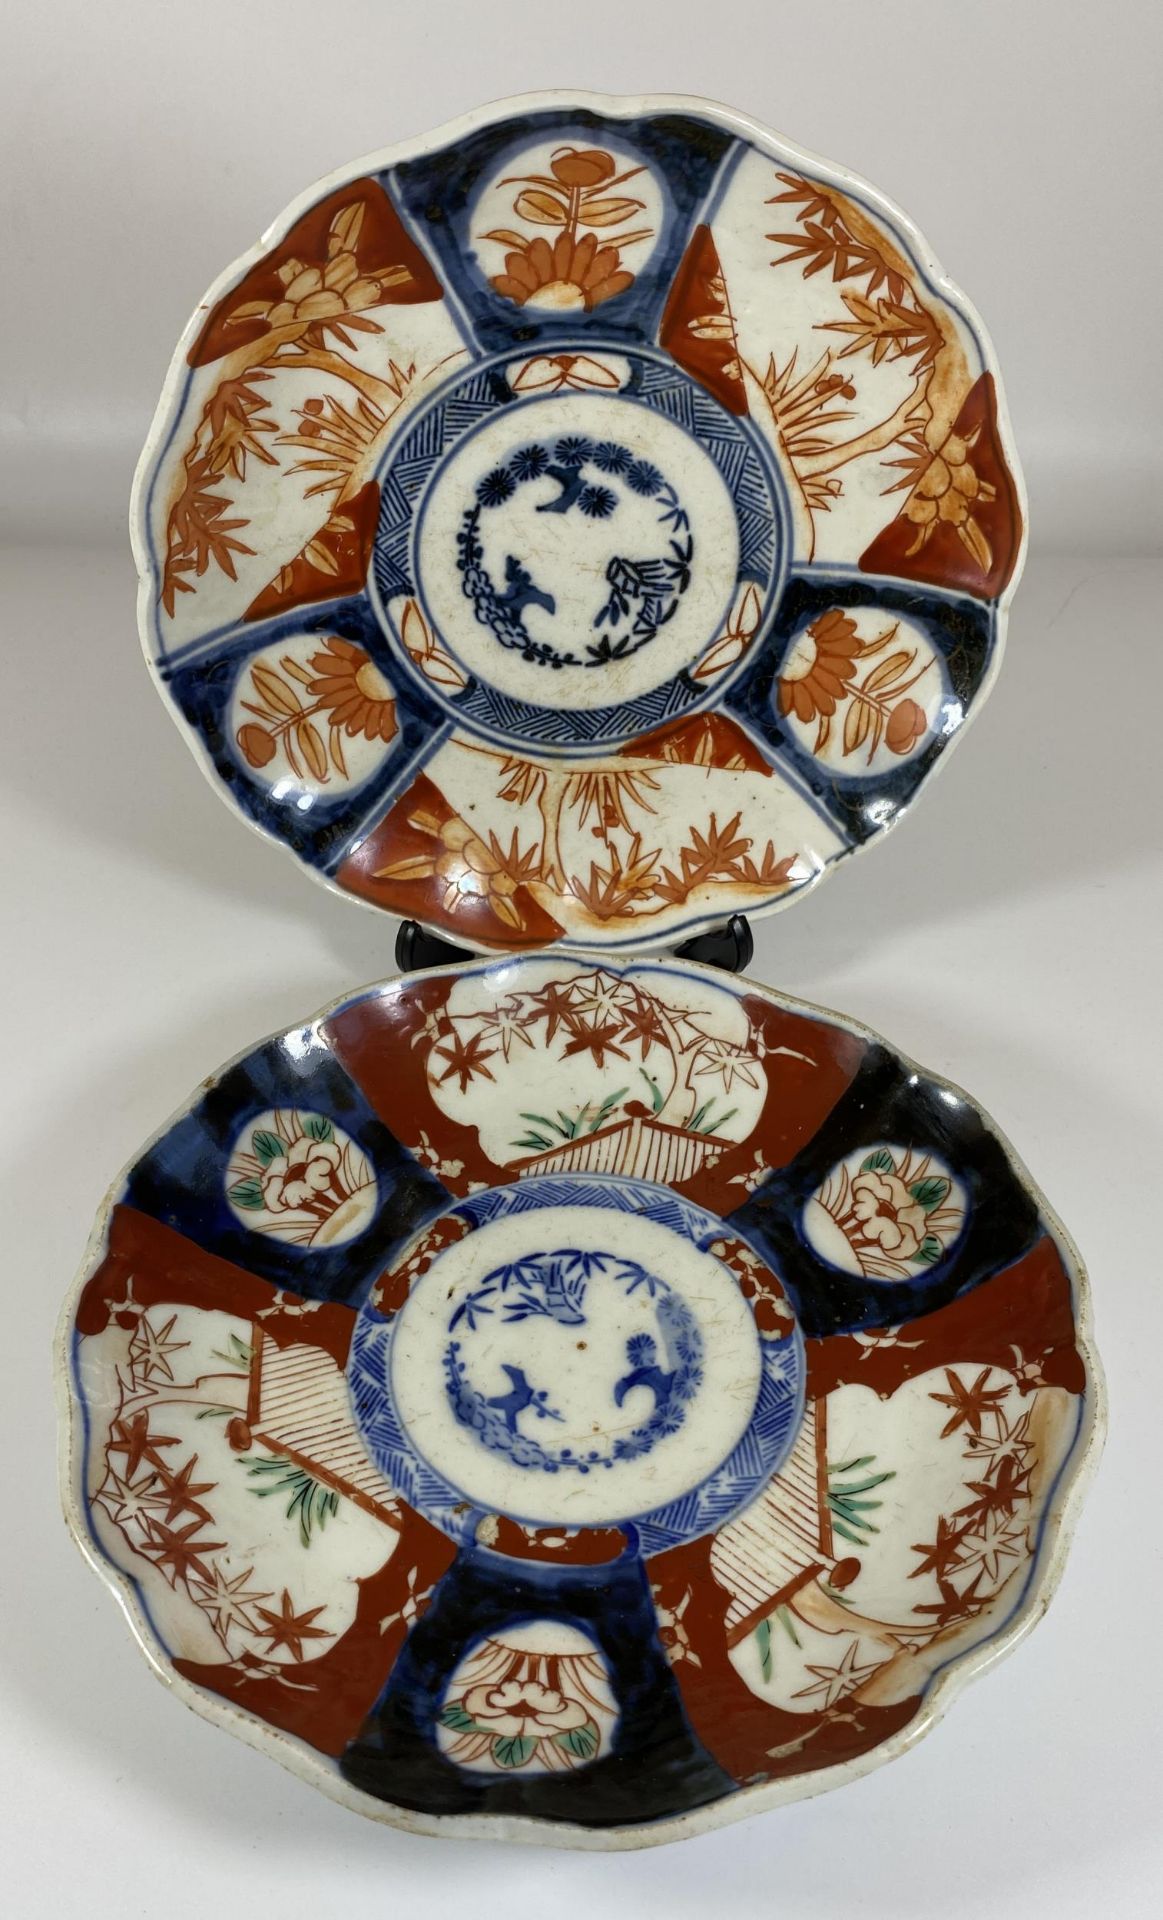 A PAIR OF JAPANESE MEIJI PERIOD (1868-1912) IMARI SCALLOPED RIM PLATES, DIAMETER 22CM